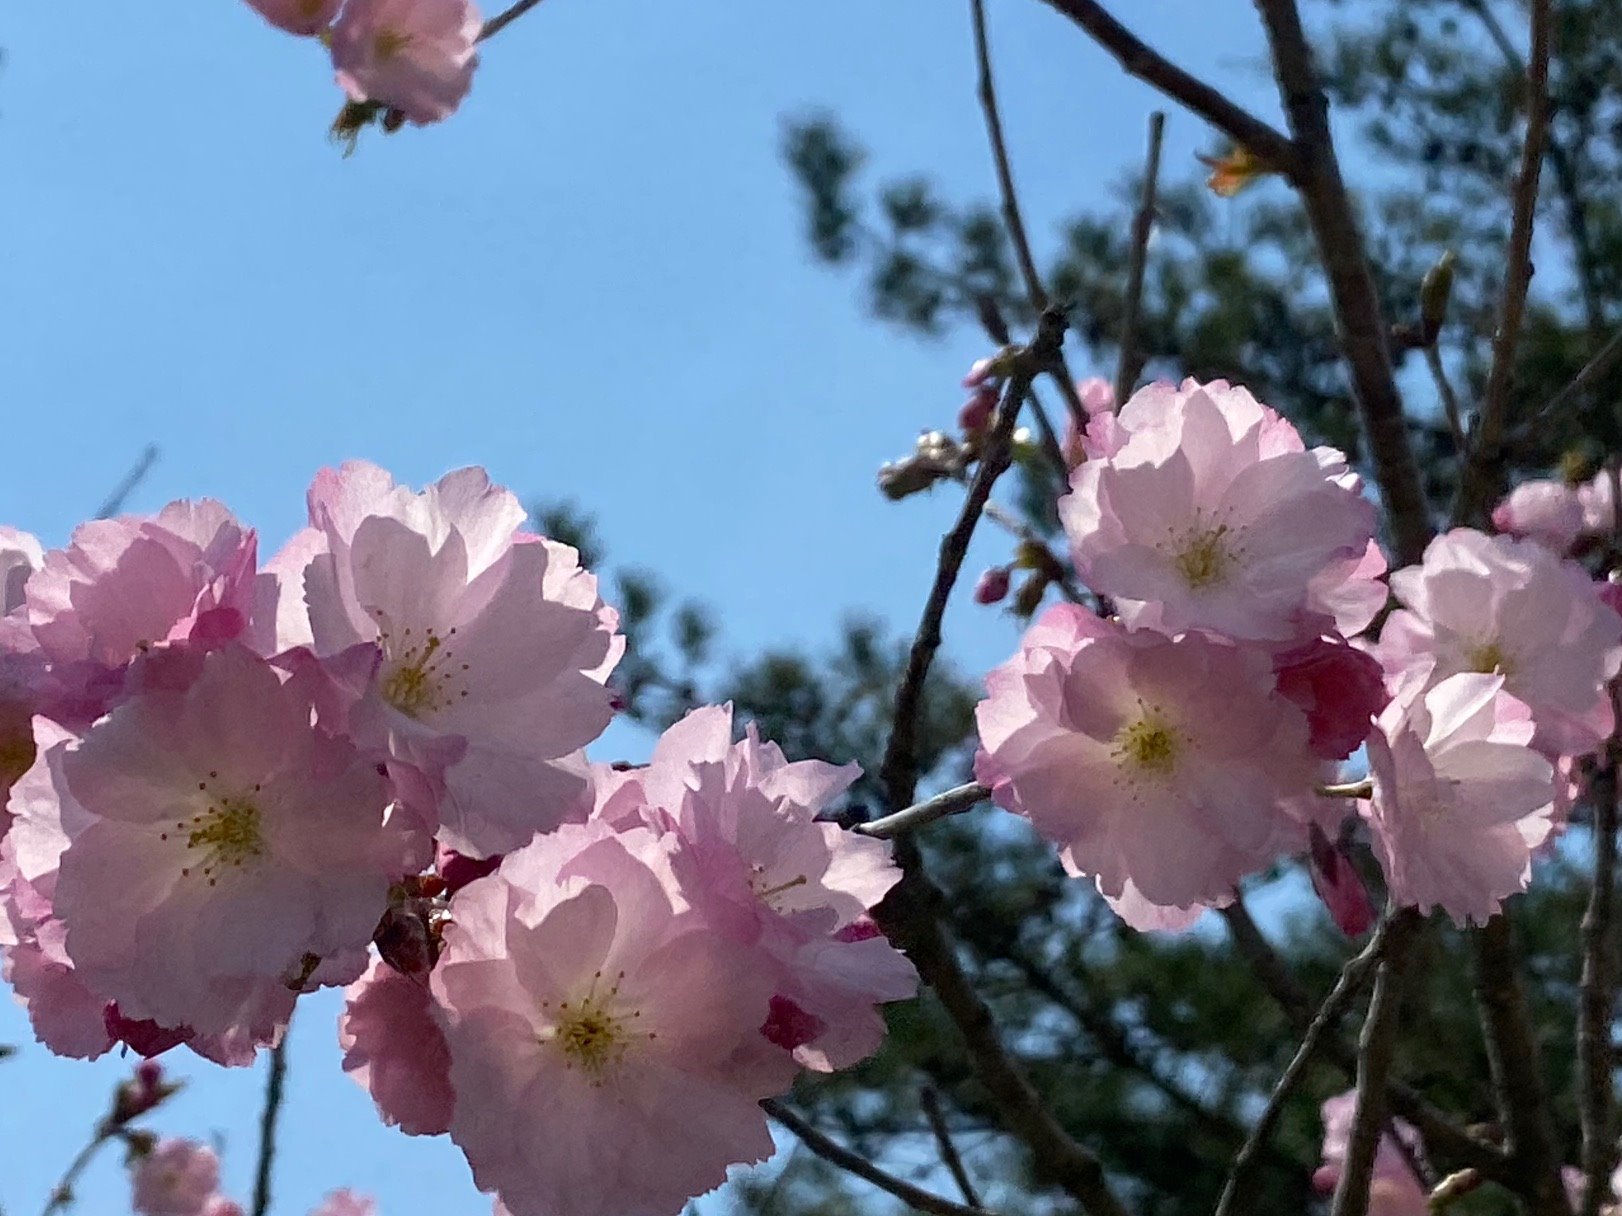 弘前市立東部公民館 城東公園の桜 学習センター隣の城東公園 今が盛りと咲いている桜 さくら サクラ 今日はかなり風が強く 花がカメラ目線になってくれません とにかく花の数にボリュームがありやっぱりきれい 最後の写真の白い車の前には